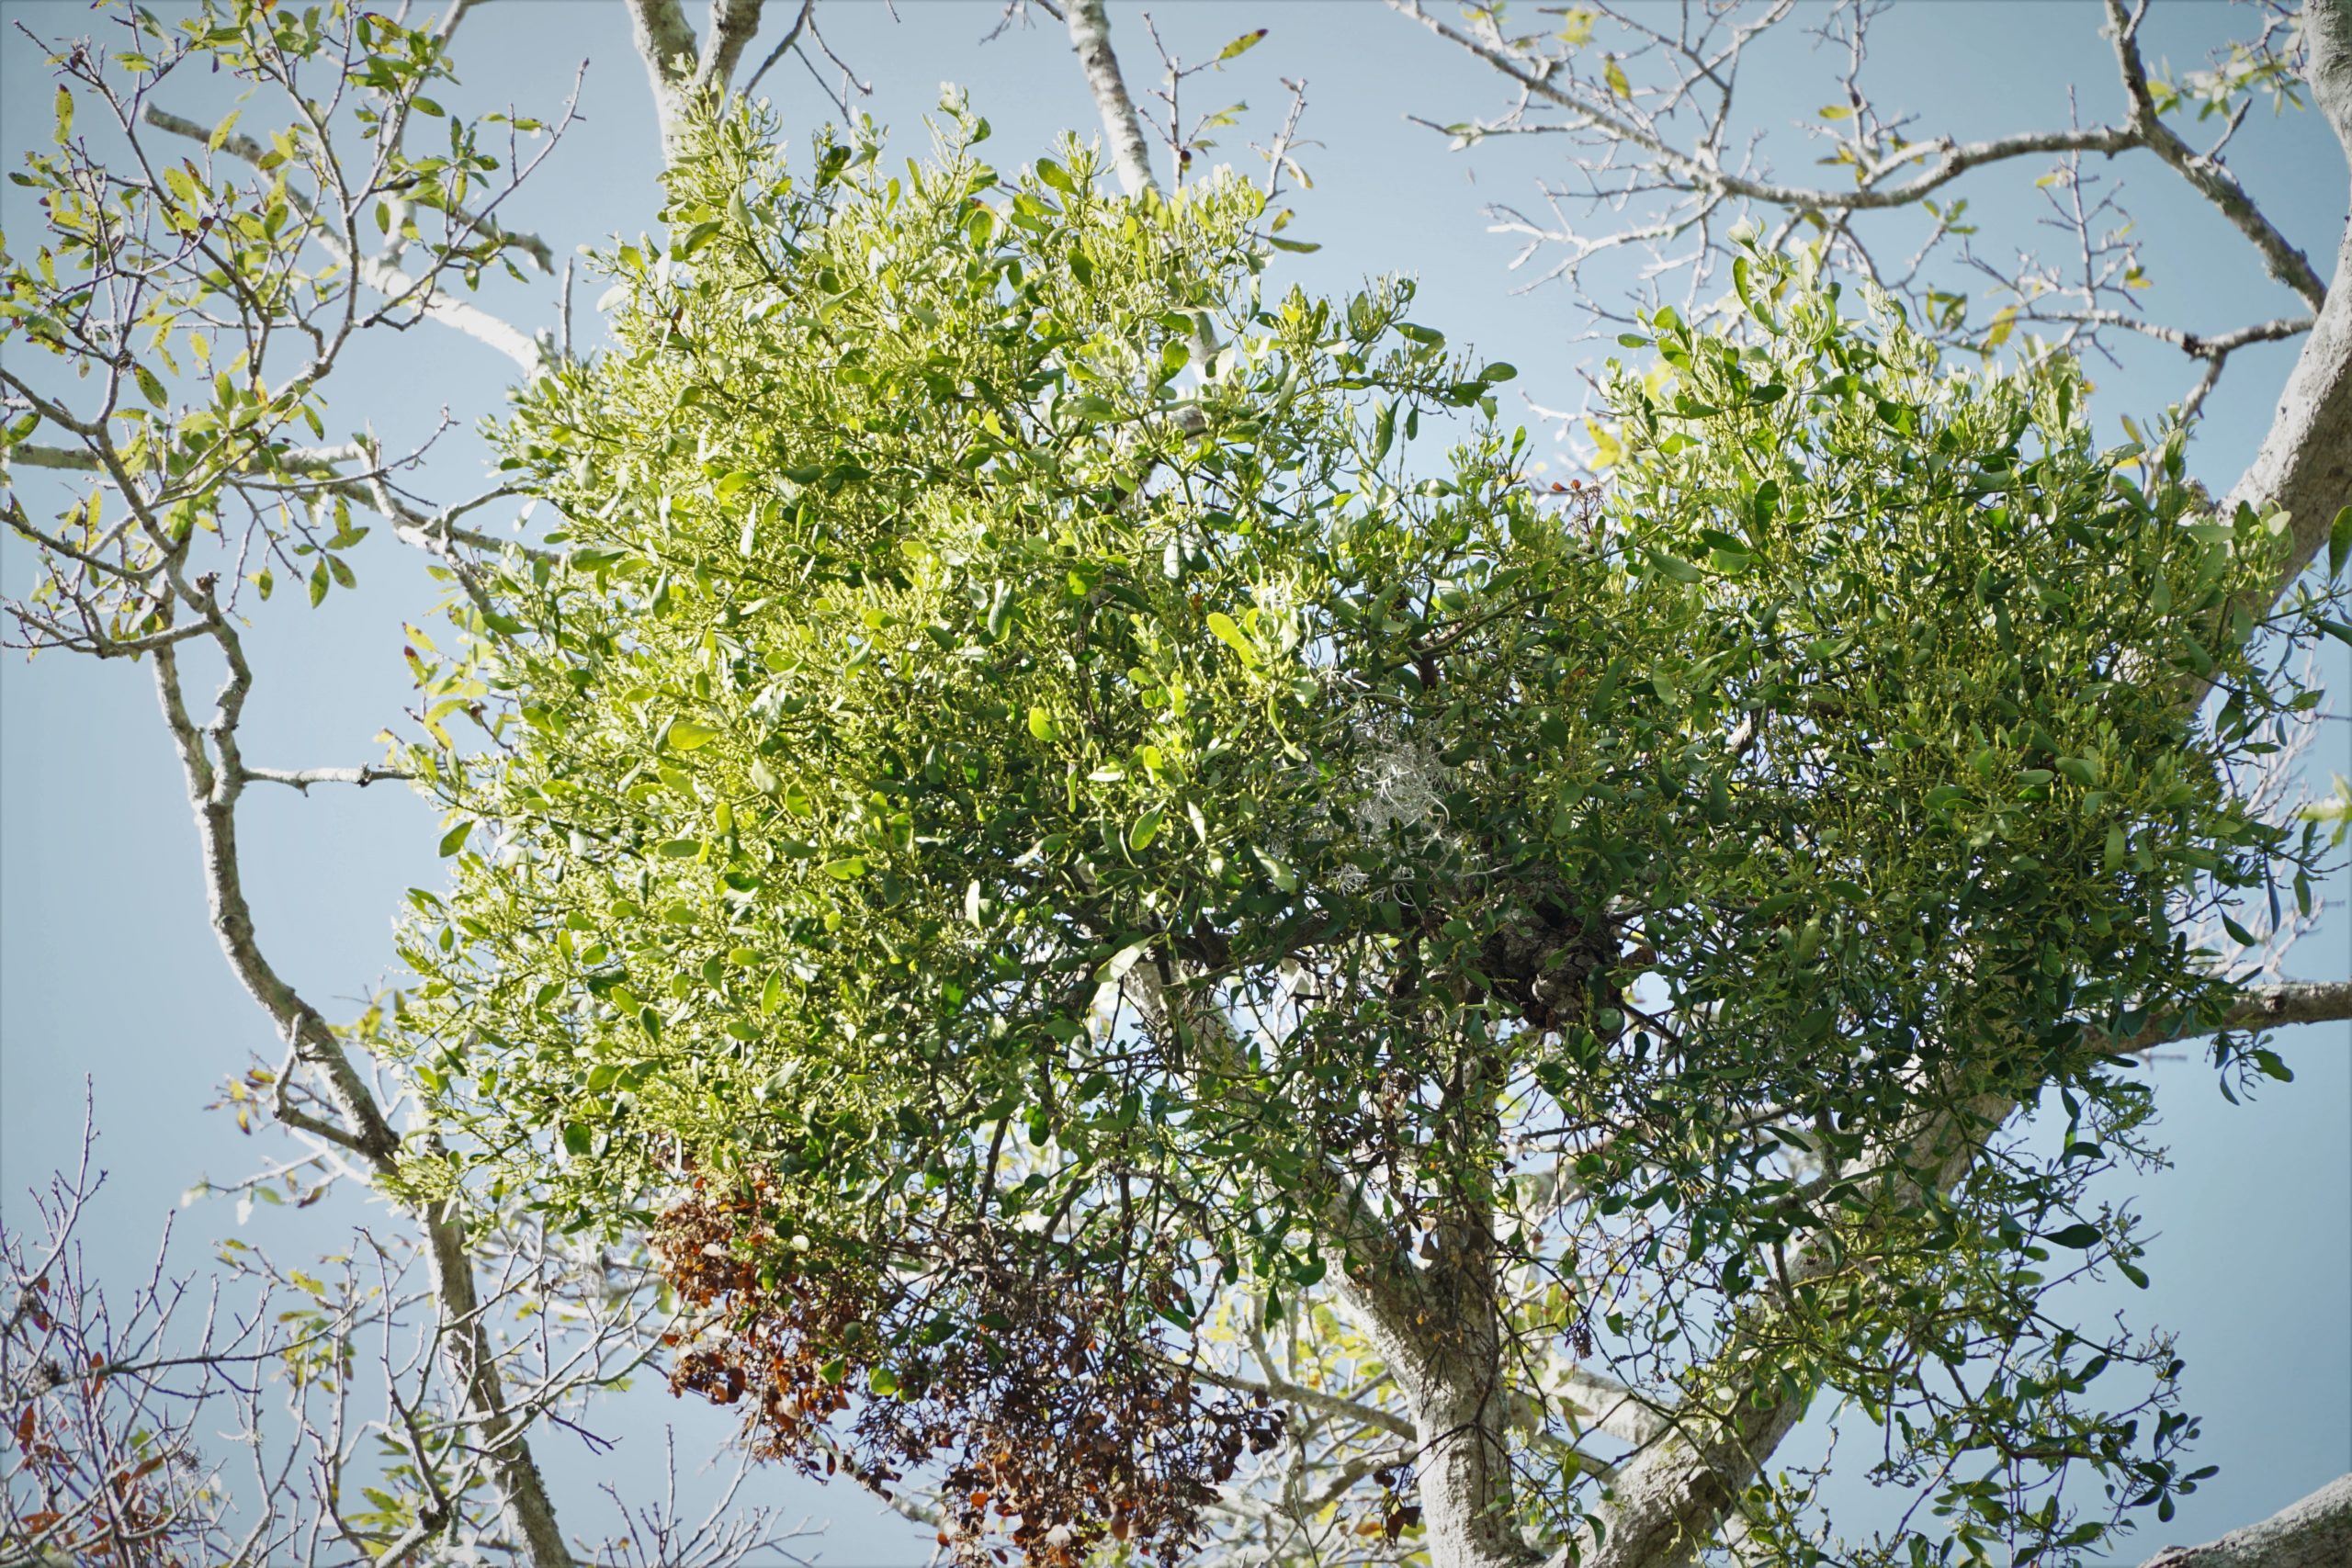 Eastern mistletoe in oak tree